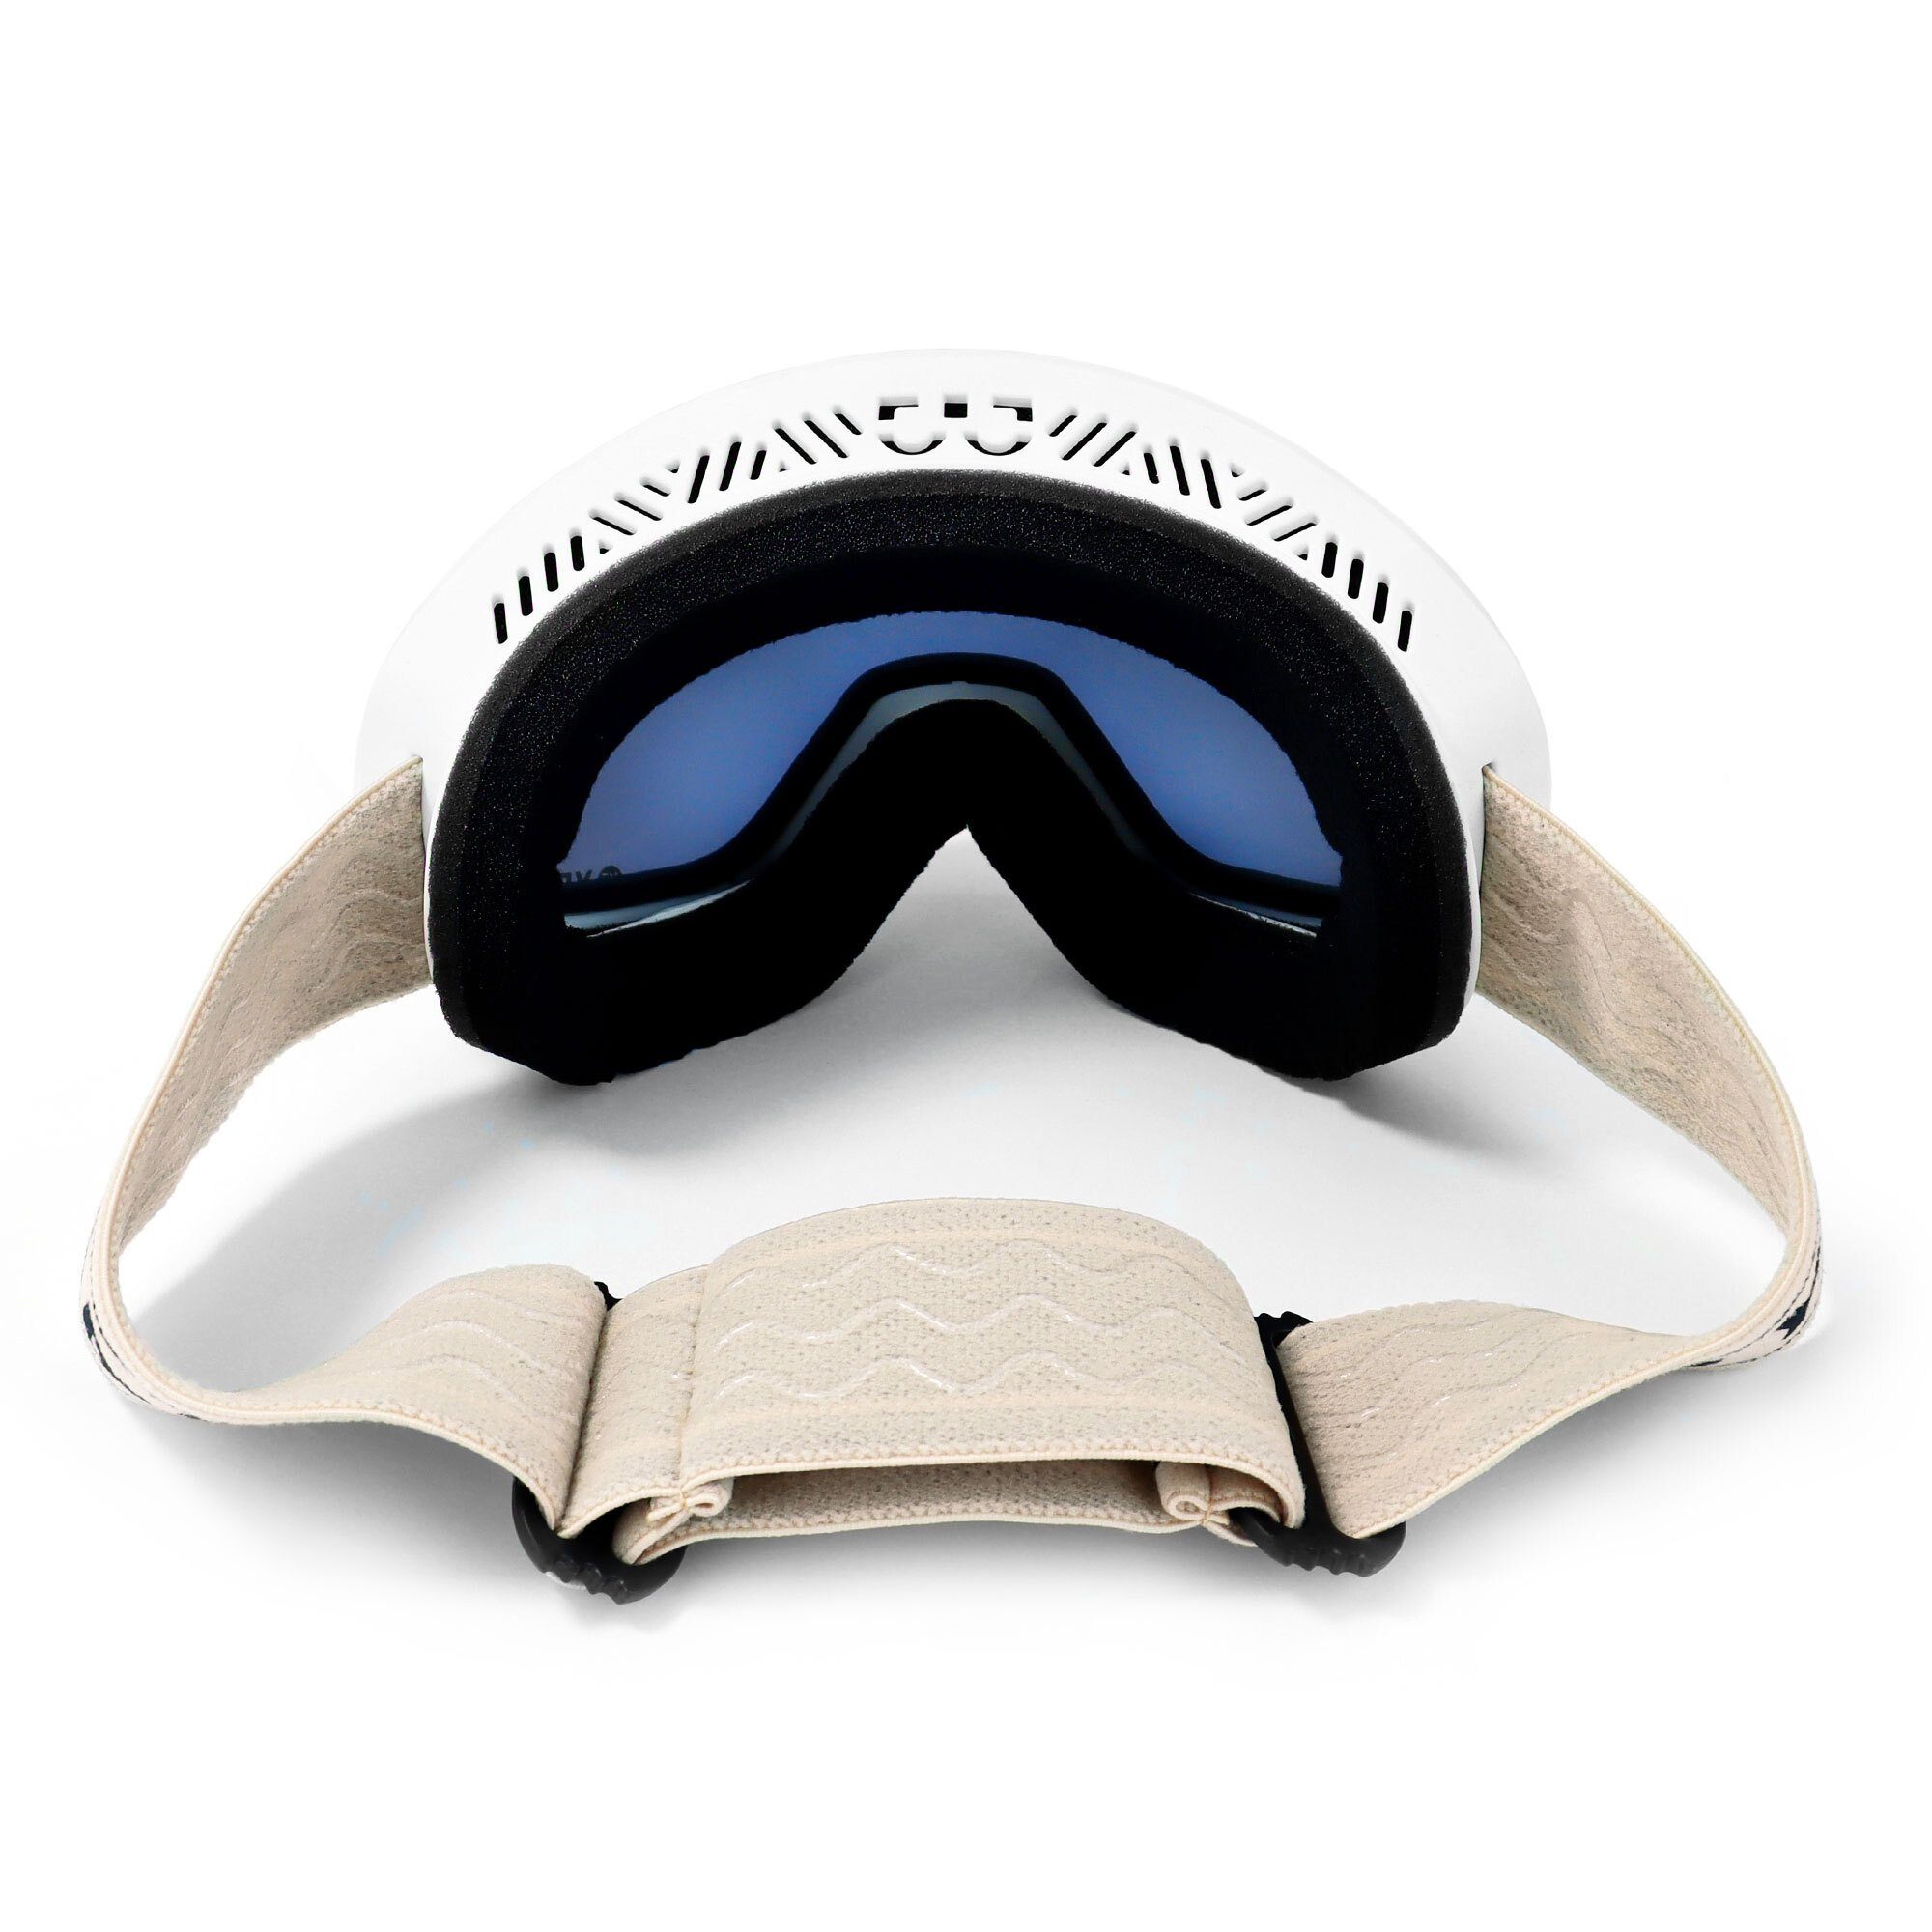 BLACK und und Premium-Ski- weiß, rot/matt RUN Erwachsene Skibrille Snowboardbrille und Jugendliche YEAZ snowboard-brille ski- für